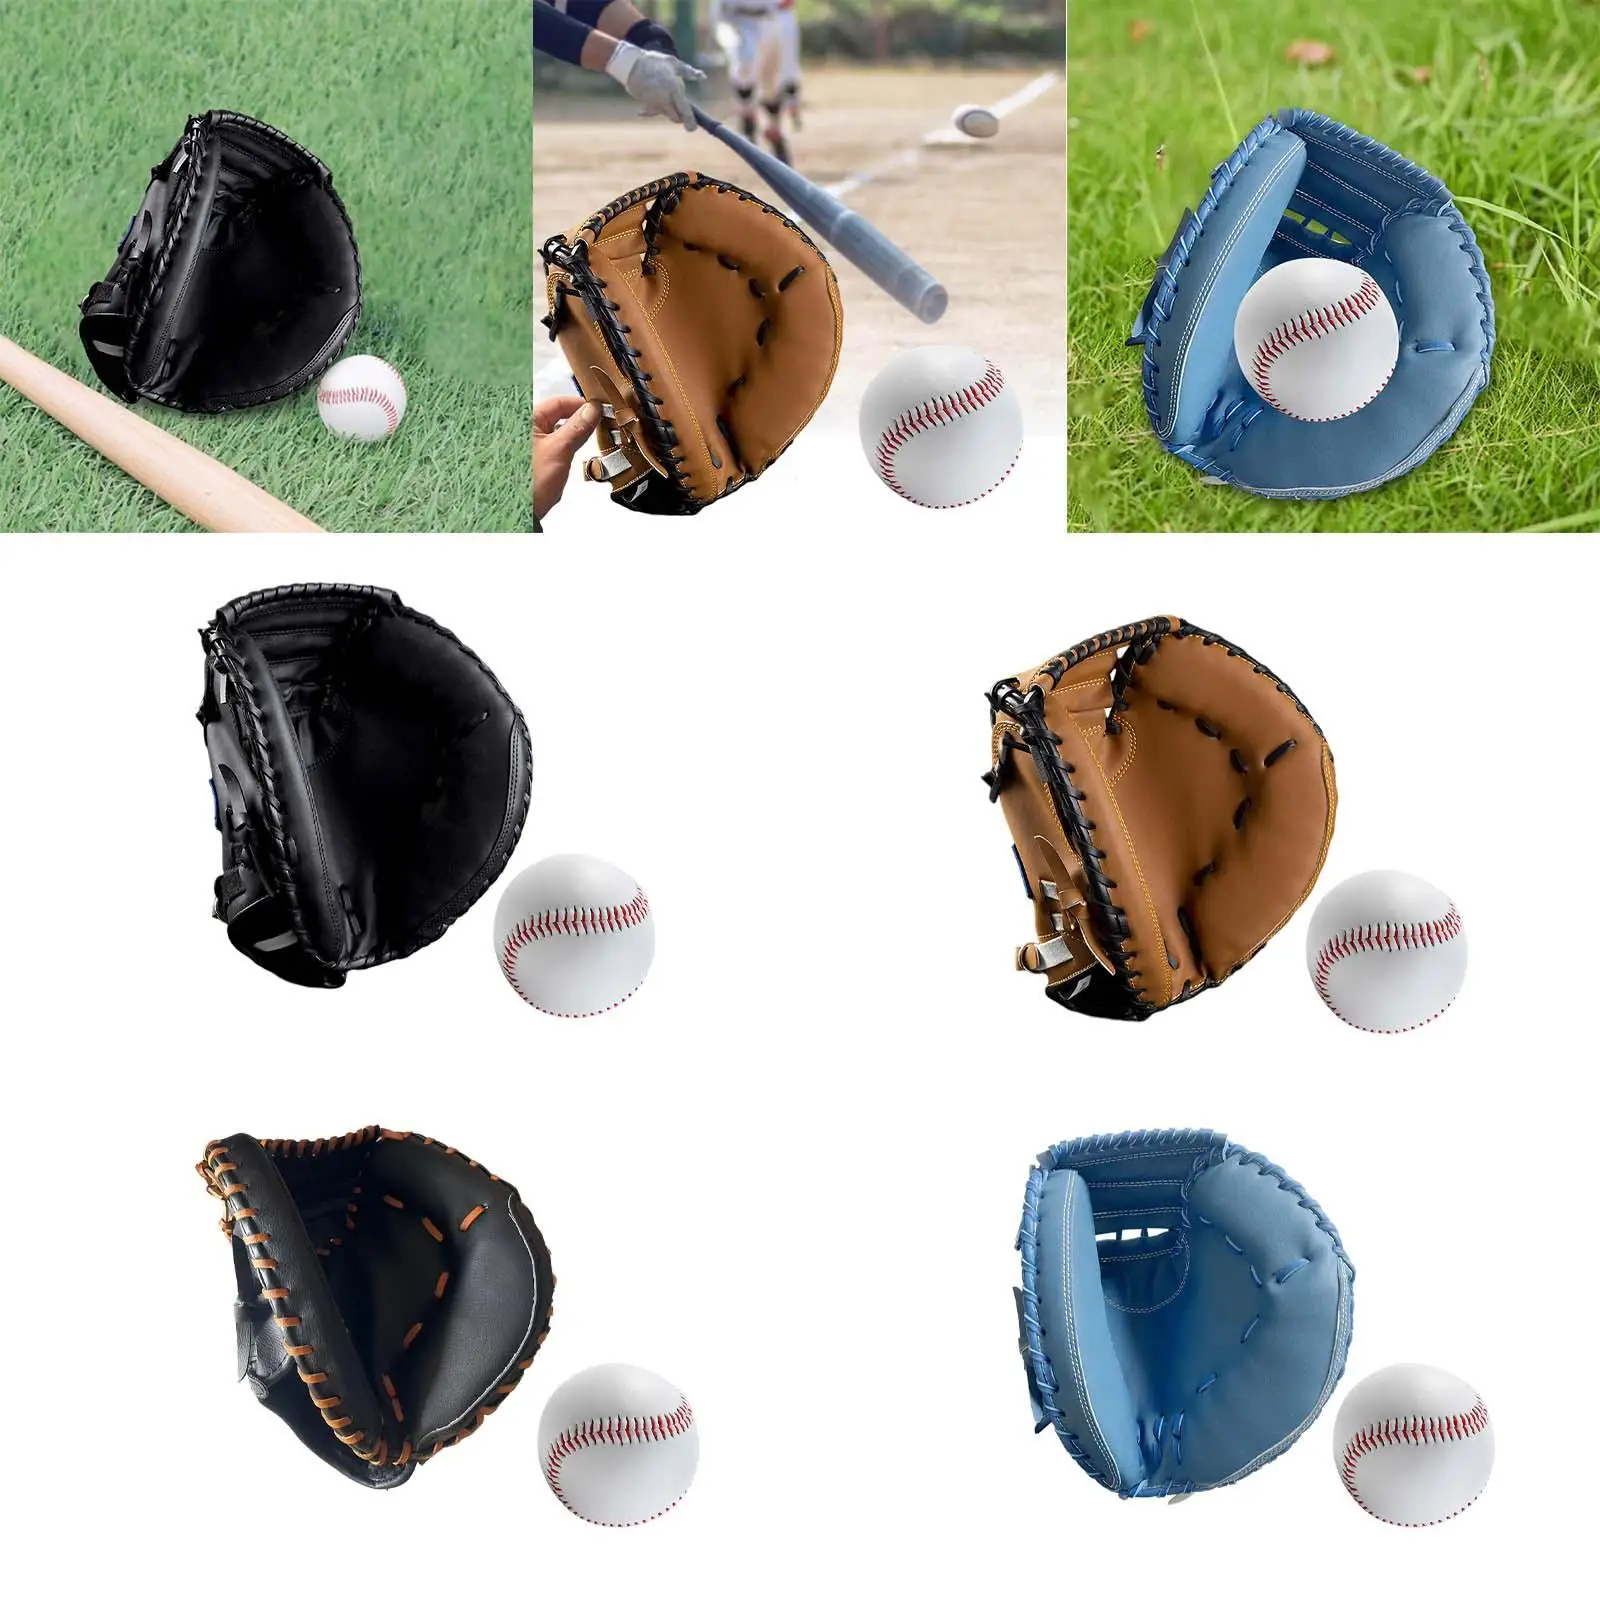 Baseball Catcher Gloves PU Professional Left Hand Sports Batting Gloves for Practice Equipment Training Exercise Unisex Beginner